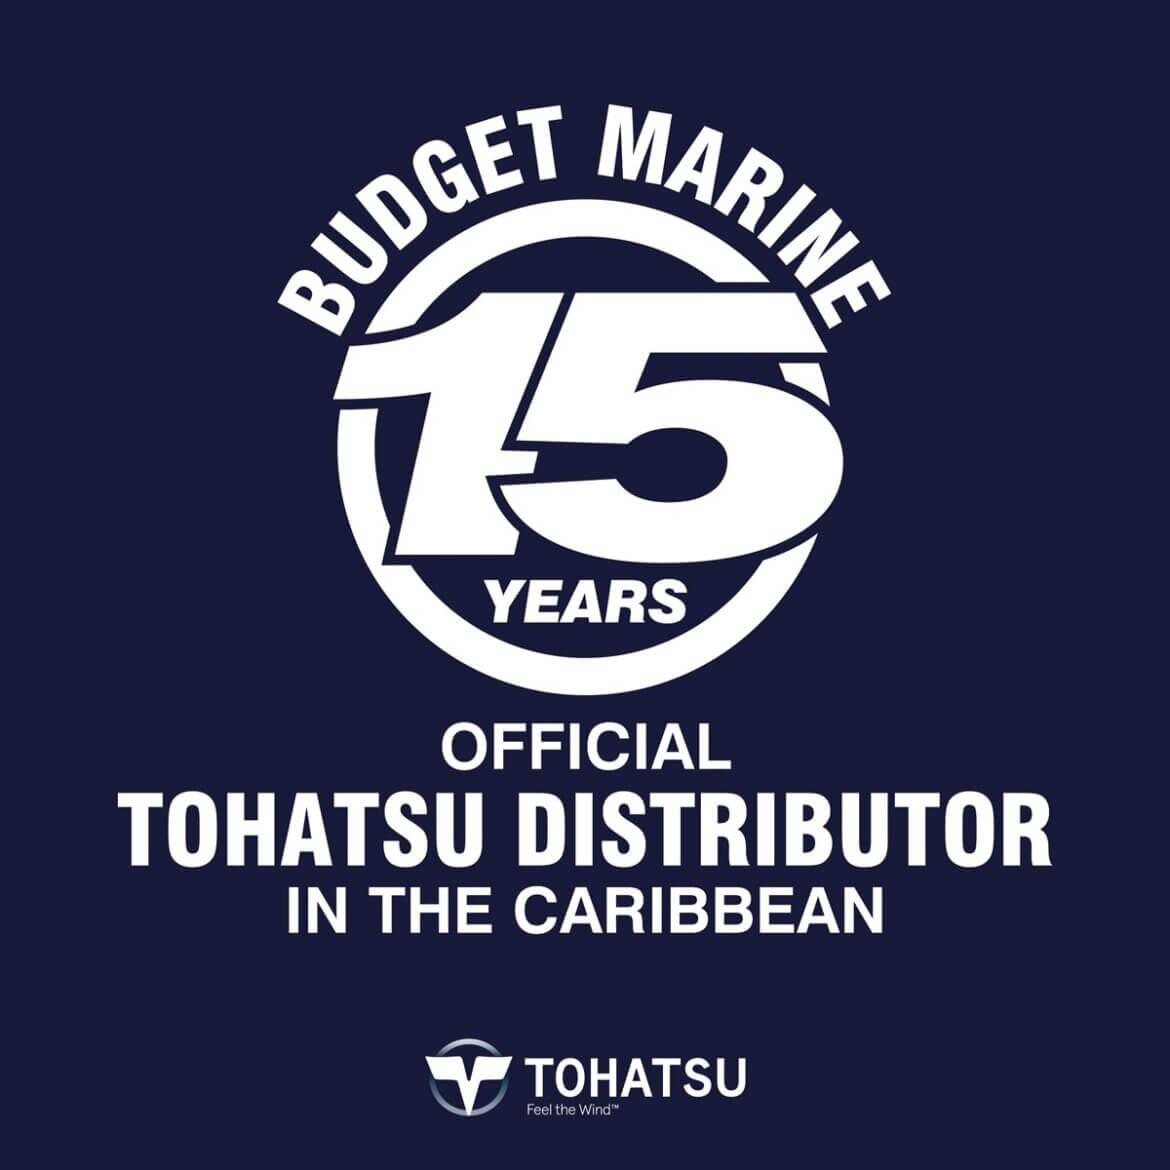 Budget Marine Aruba 13